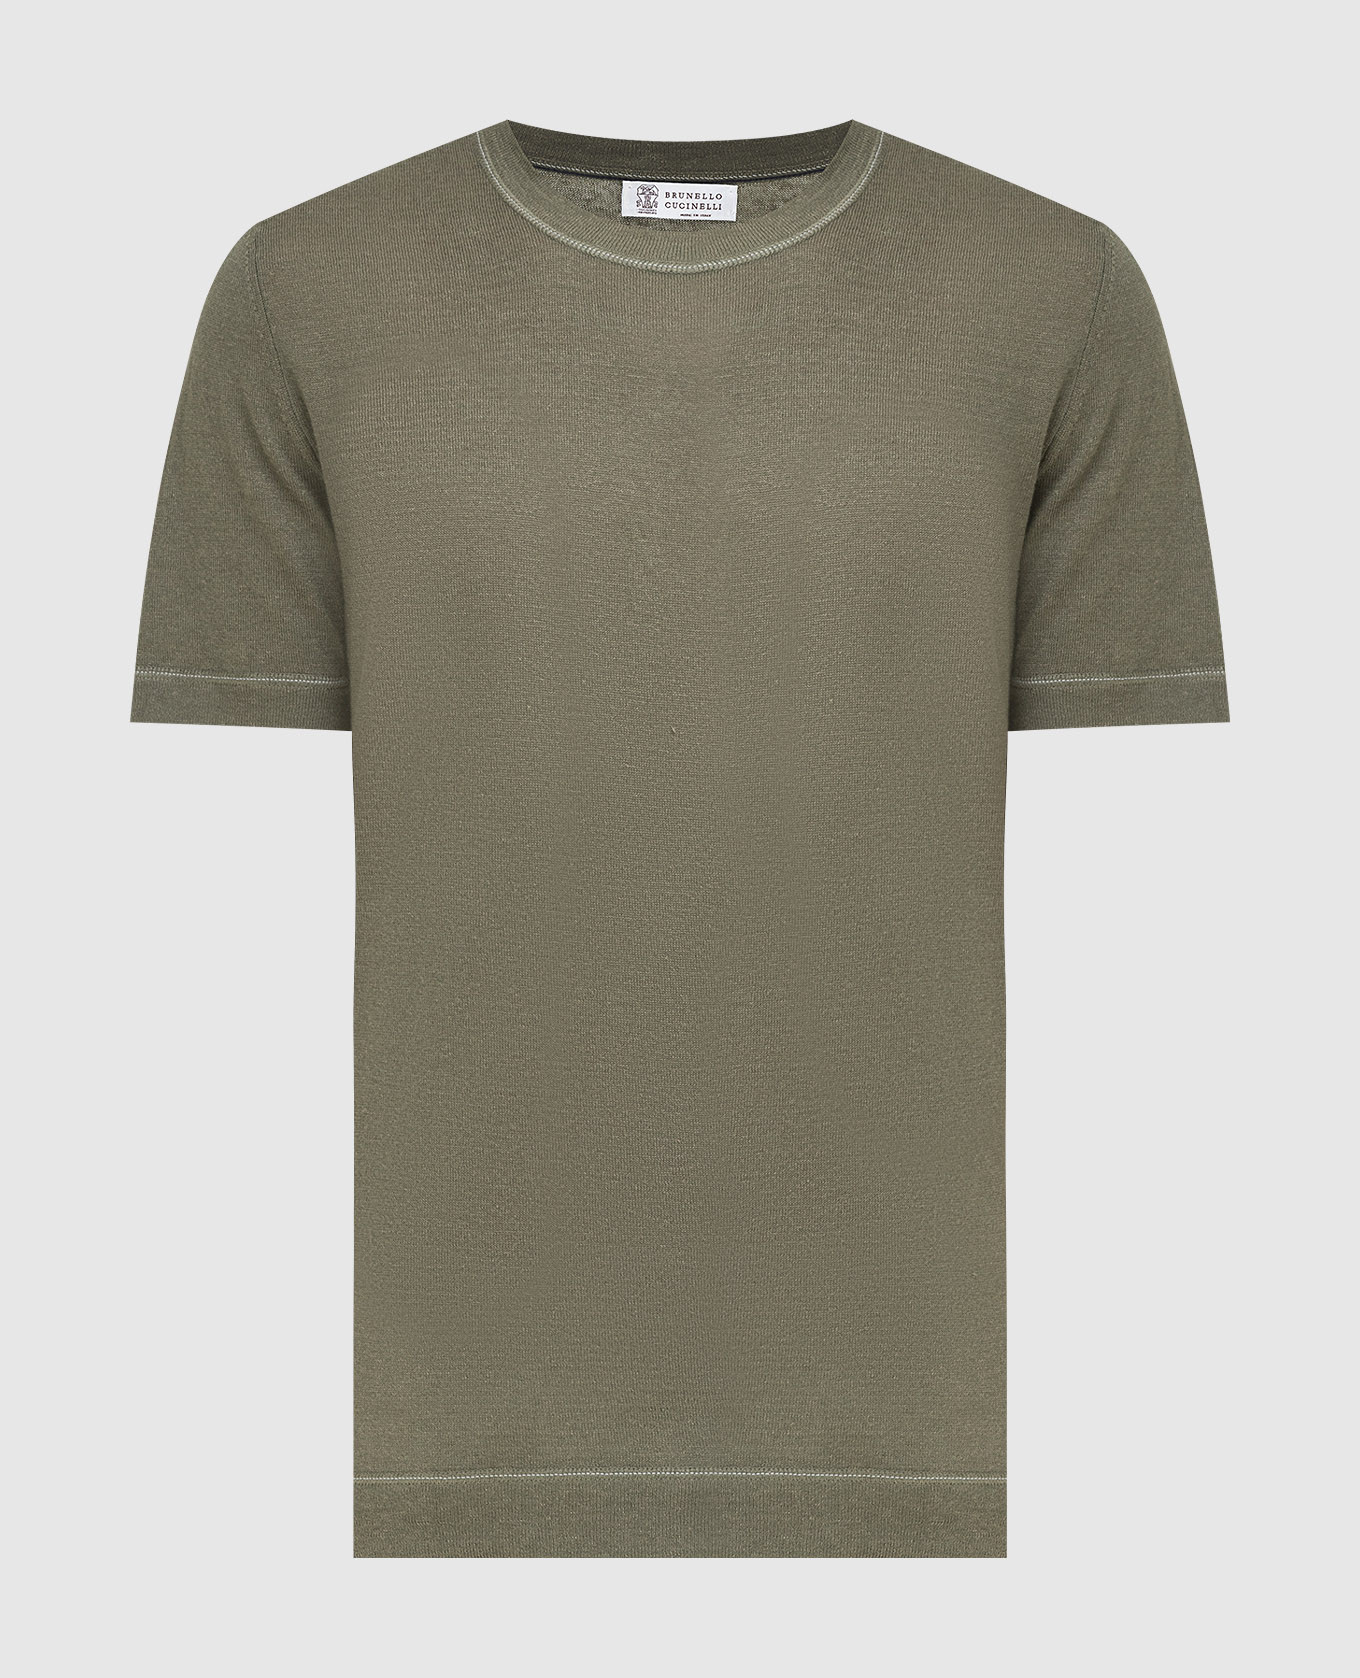 Khaki linen T-shirt